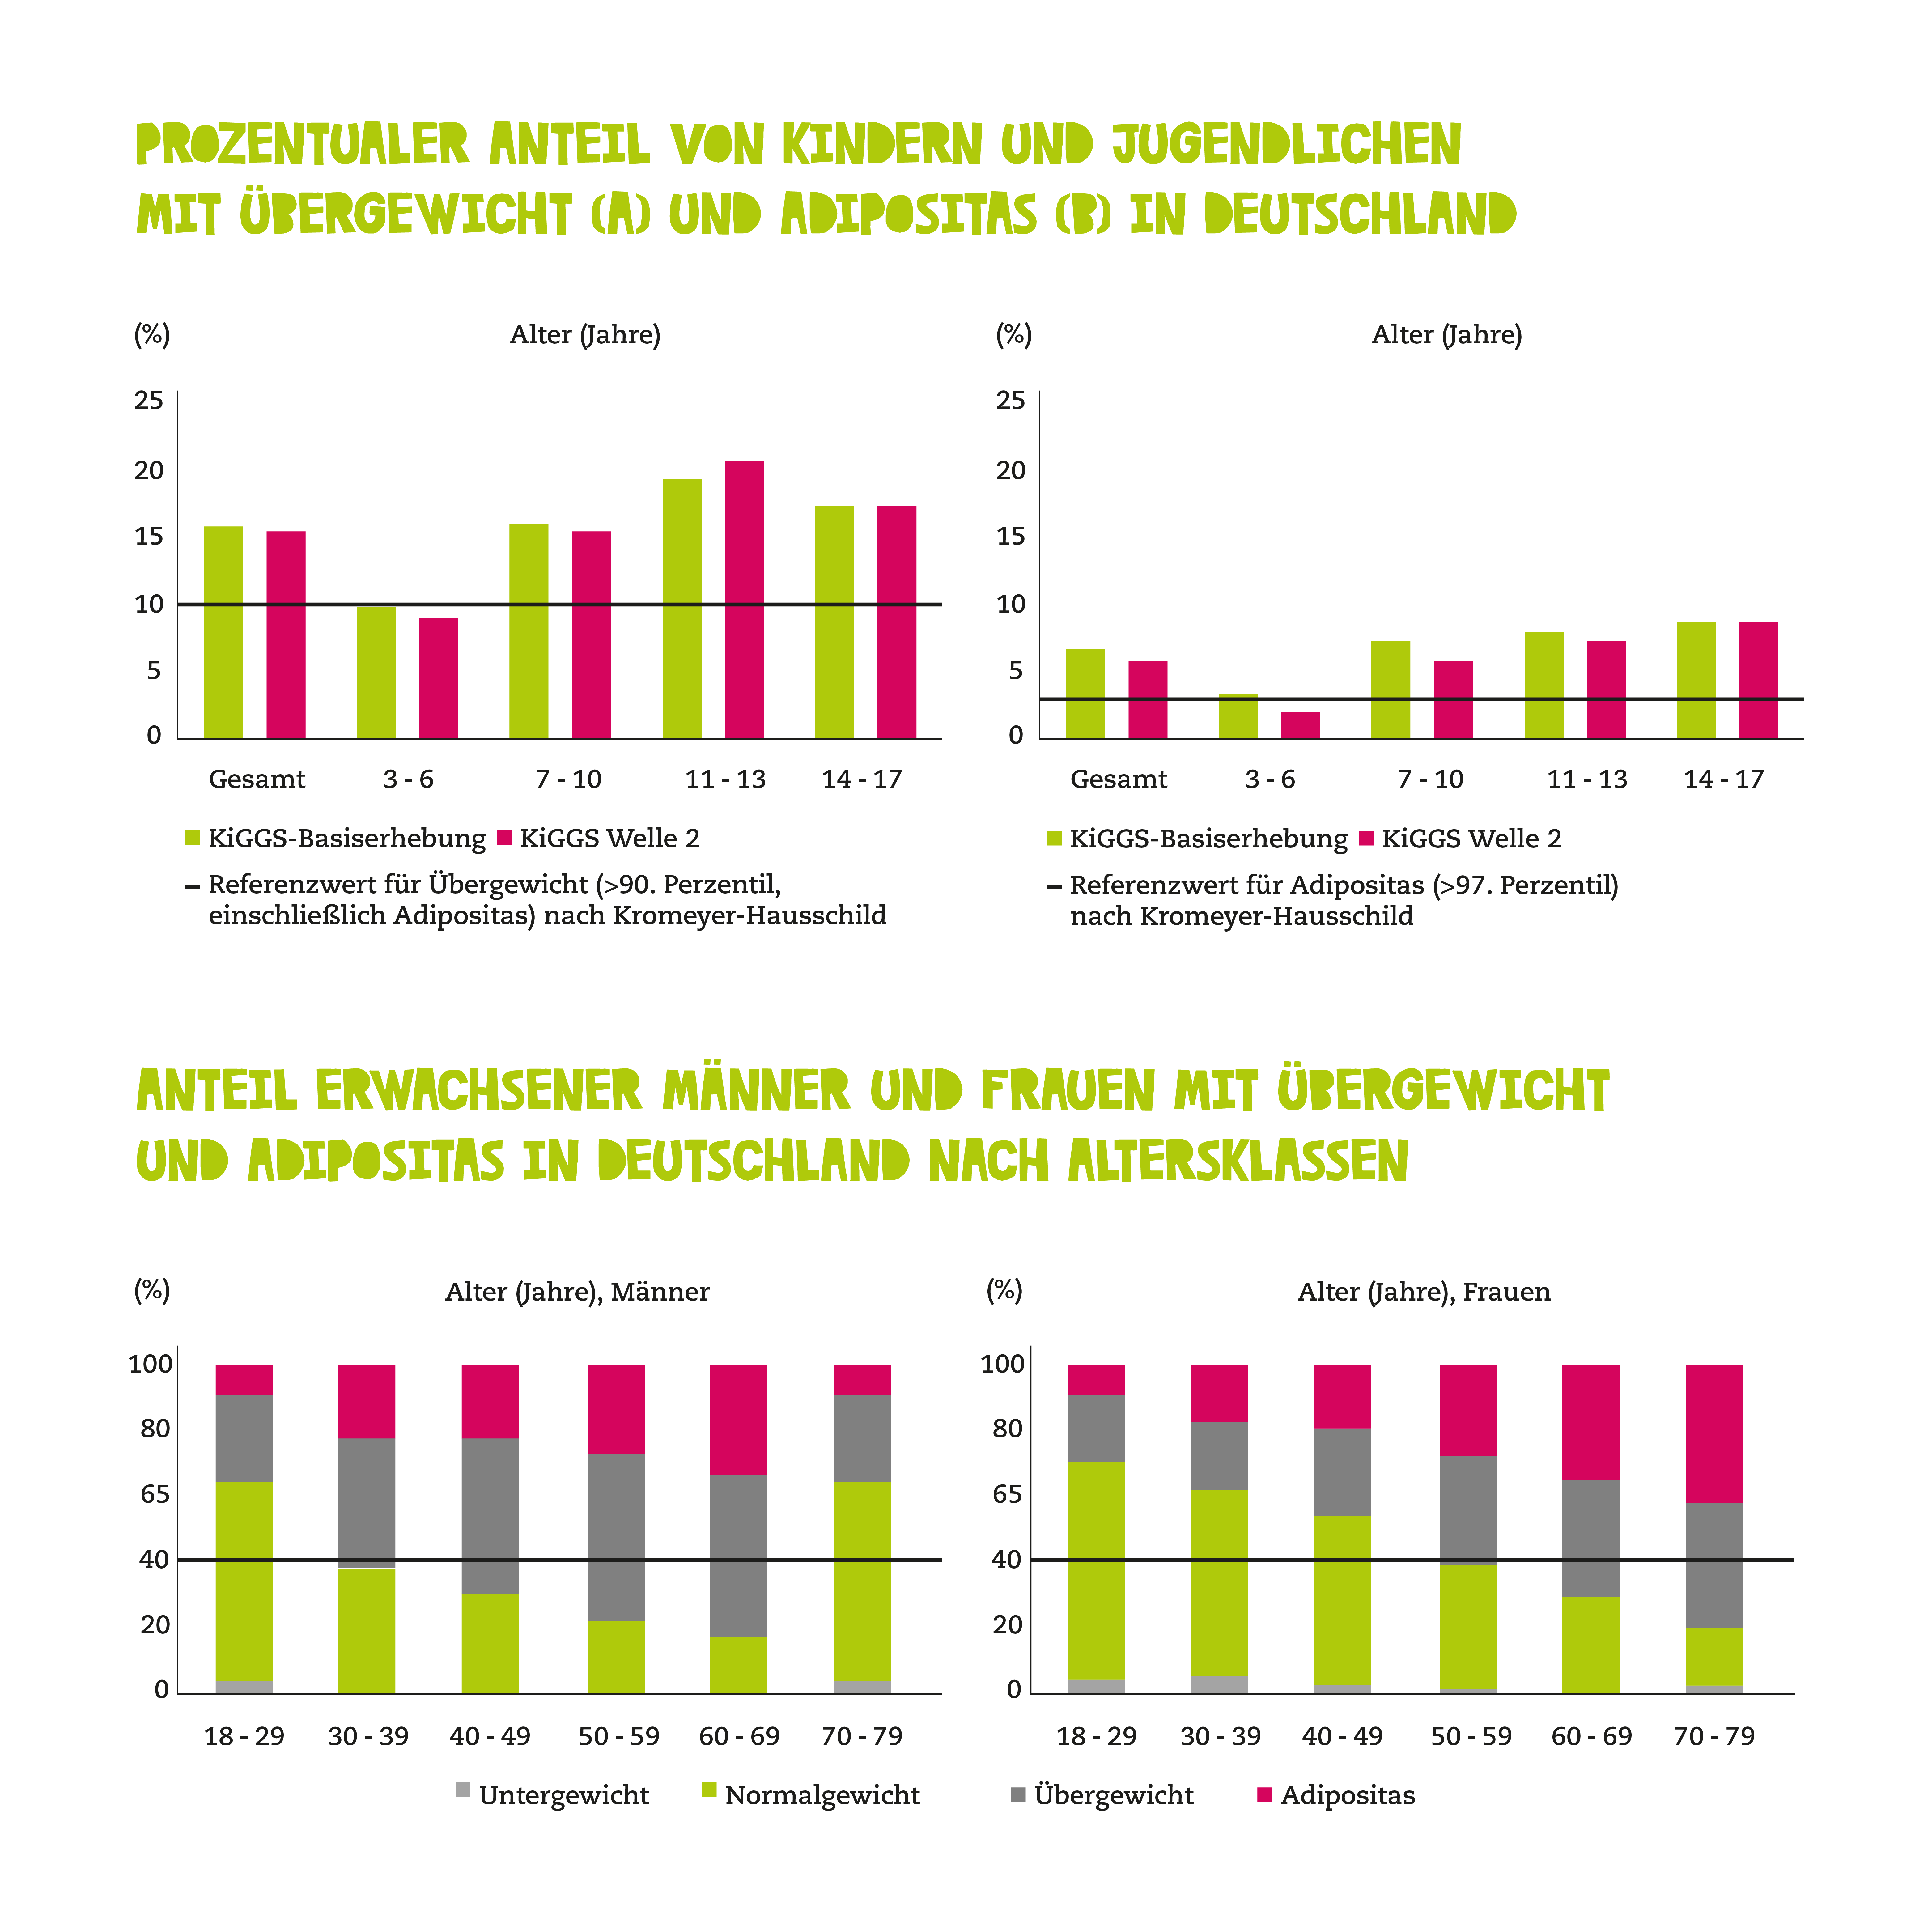 Statistik körpergröße deutschland